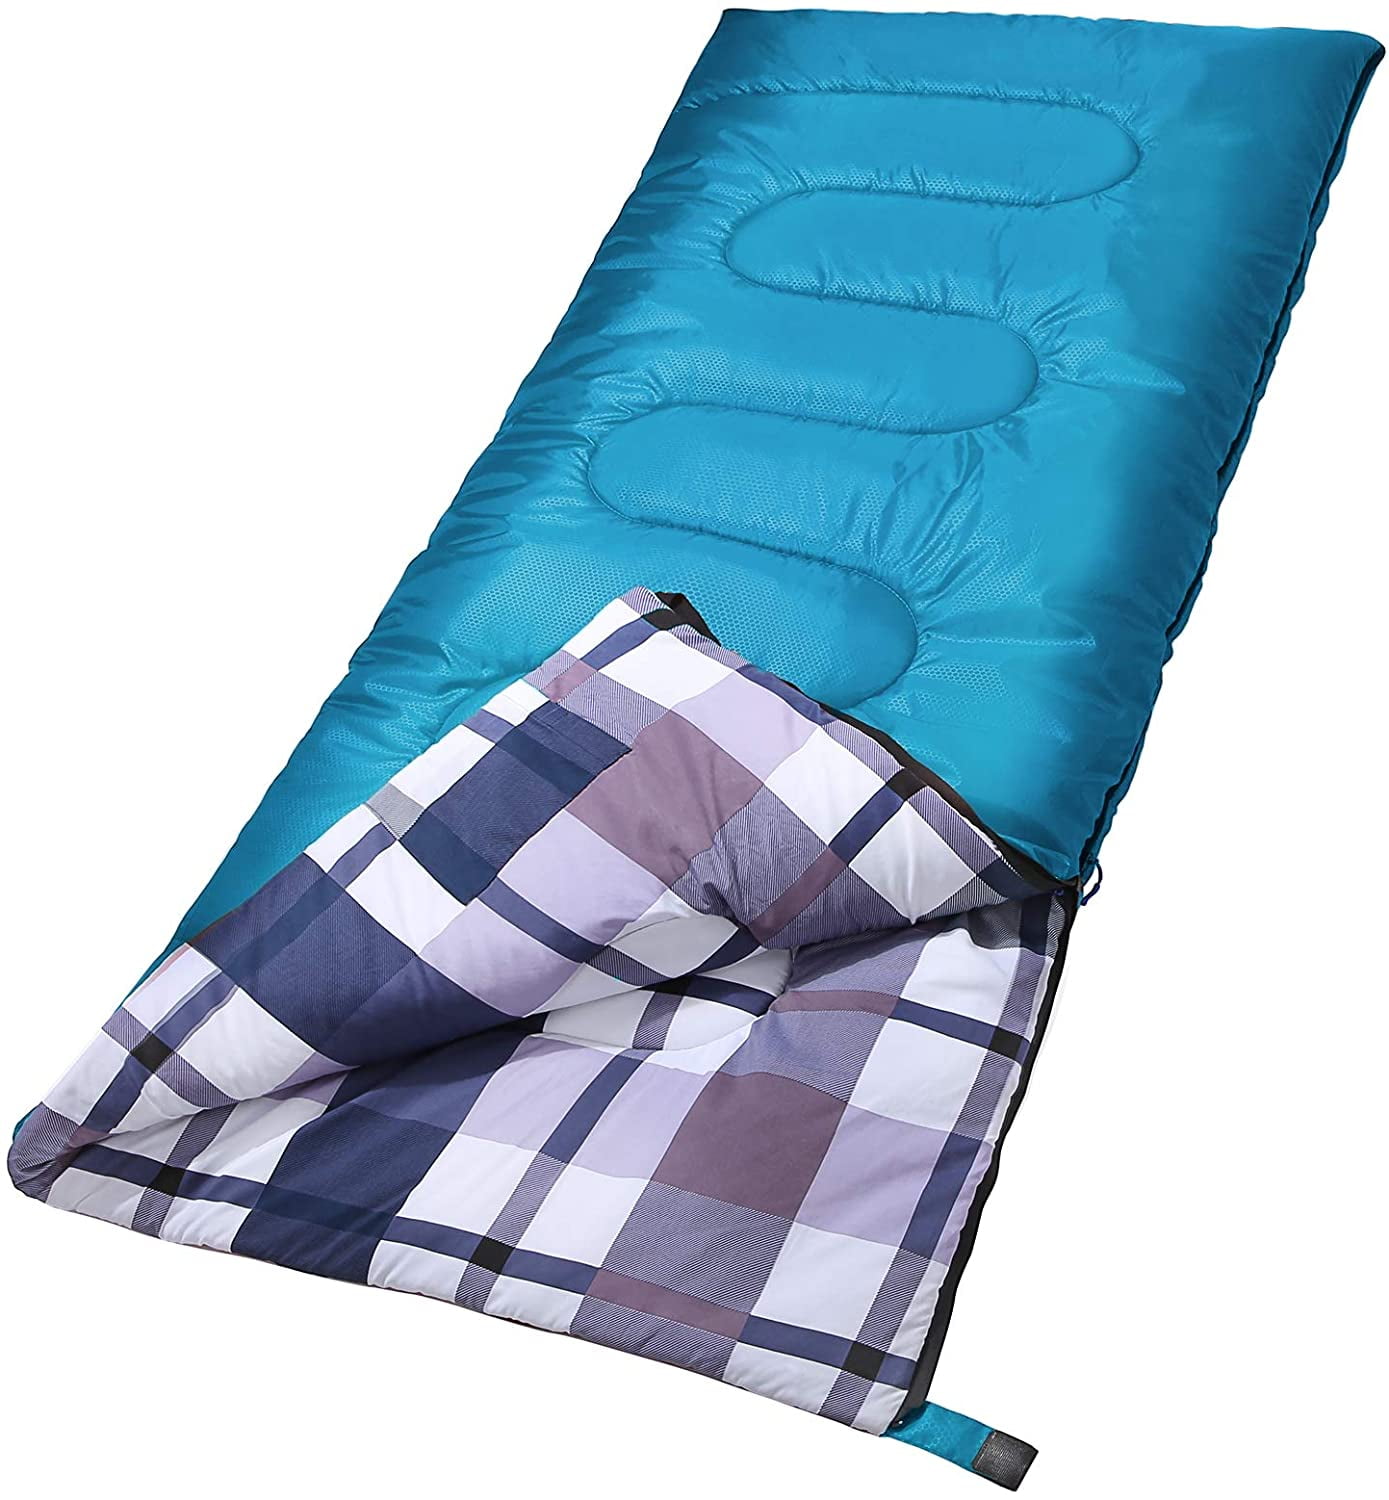 Details about   Waterproof Sleeping Bag Lightweight Ultralight Cotton Camping Sleeping Bag 